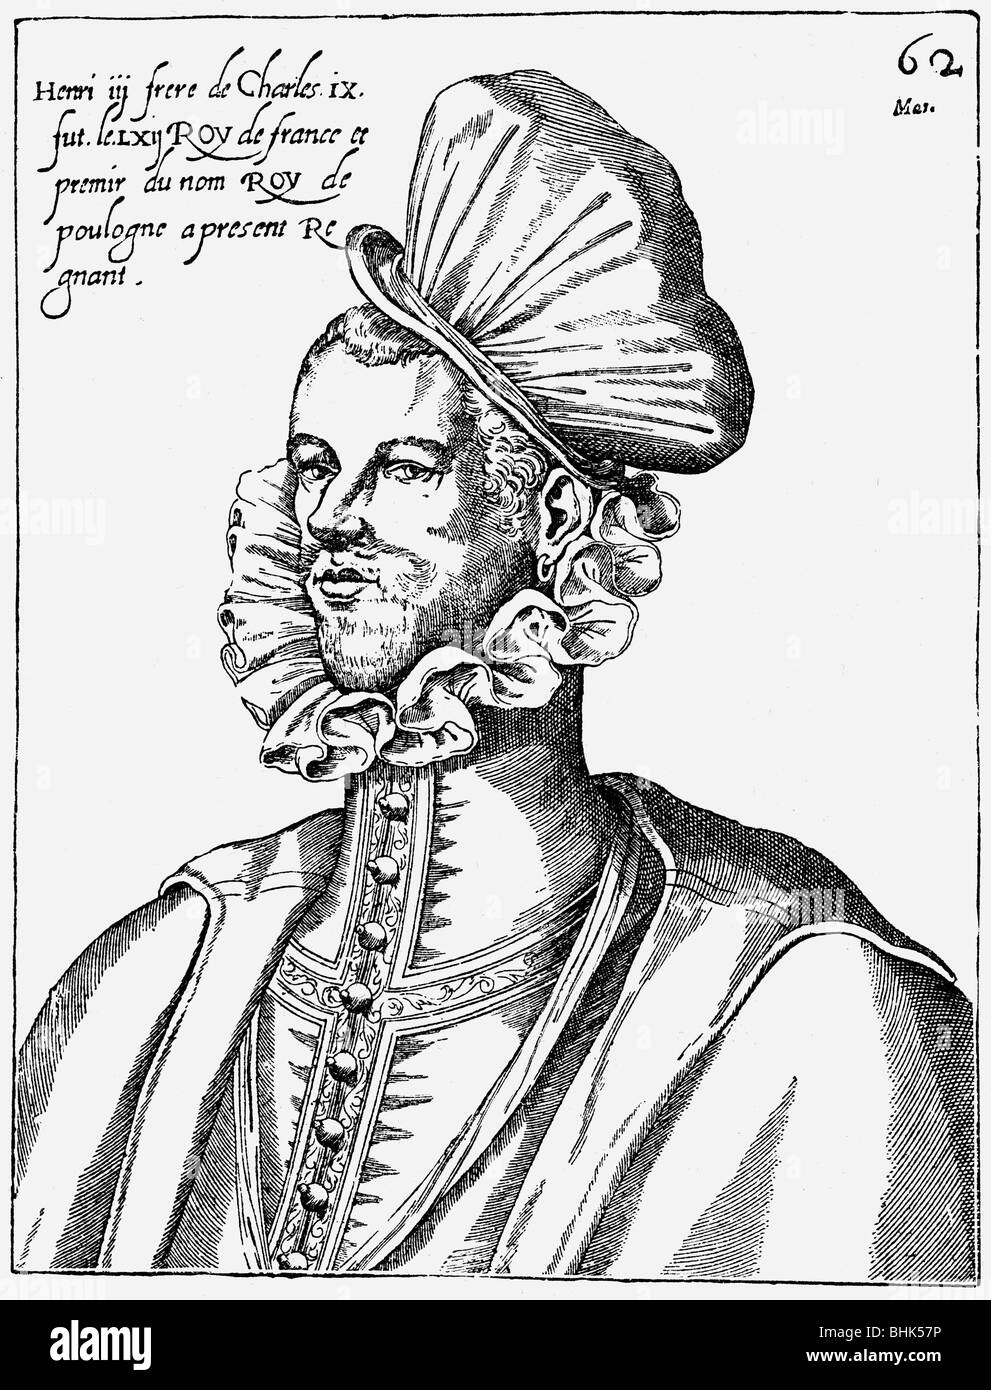 Enrico III, 19.9.1551 - 2.8 1589, Re di Francia 30.5.1574 - 2.8.1589, ritratto, incisione su rame, XVI secolo, , artista del diritto d'autore non deve essere cancellata Foto Stock